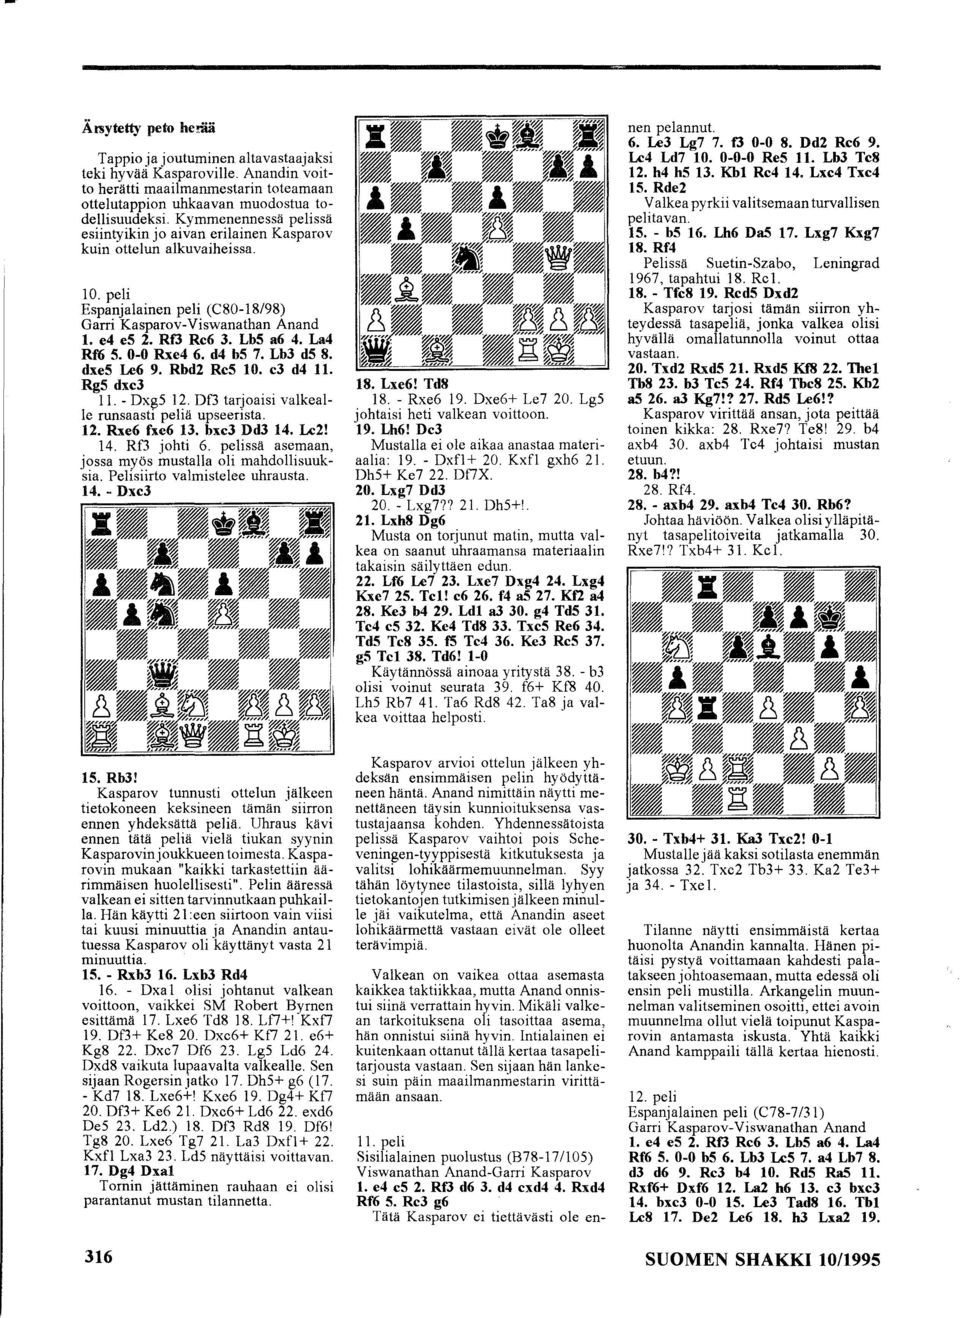 La4 Rf6 S. 0-0 Rxe4 6. d4 bs 7. Lb3 ds 8. dxes Le6 9. Rbd2 RcS 10. c3 d4 11. RgS dxc3 11. - Dxg5 12. Df3 tarjoaisi valkeal Ie runsaasti peliä upseerista. 12. Rxe6 fxe6 13. bxc3 Dd3 14. Lc2! 14. Rf3 johti 6.